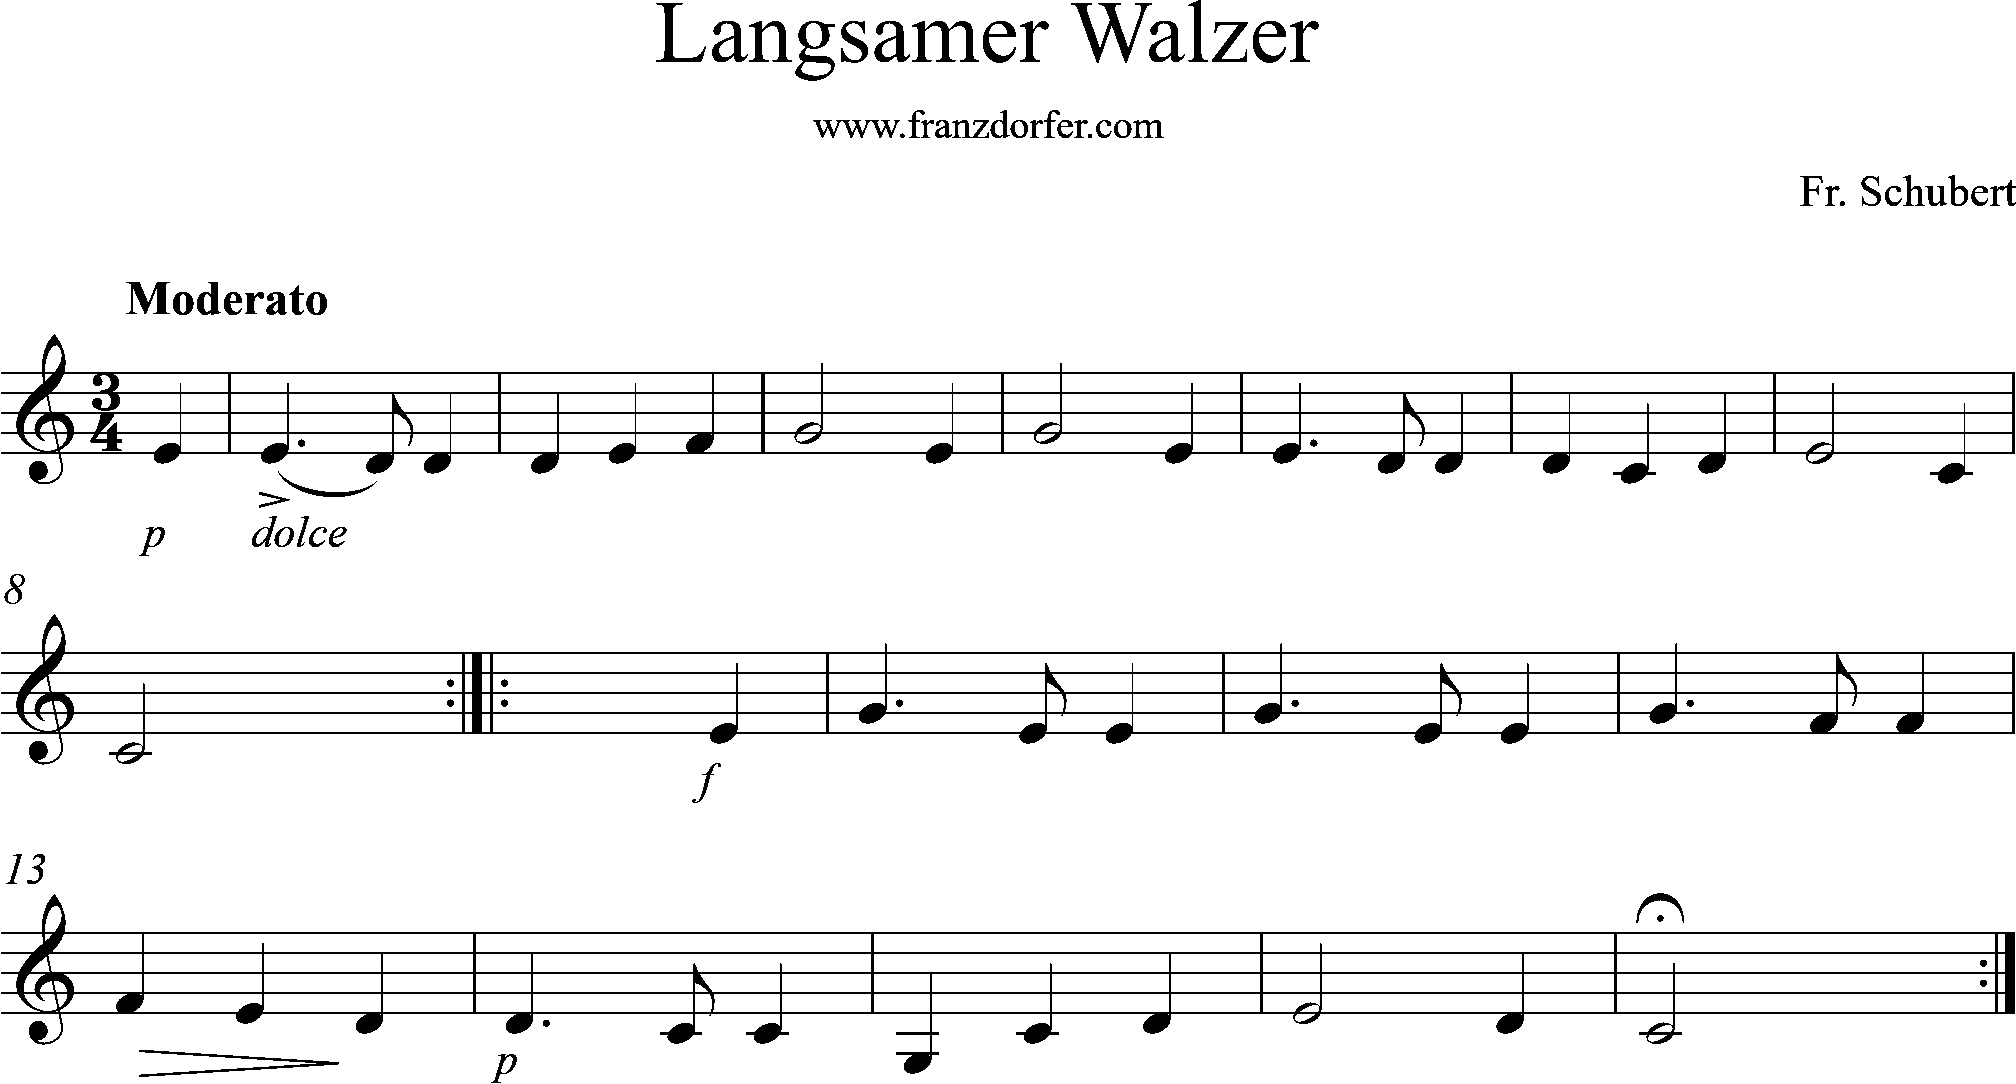 C-Dur, Noten Schubert, Langsamer Walzer